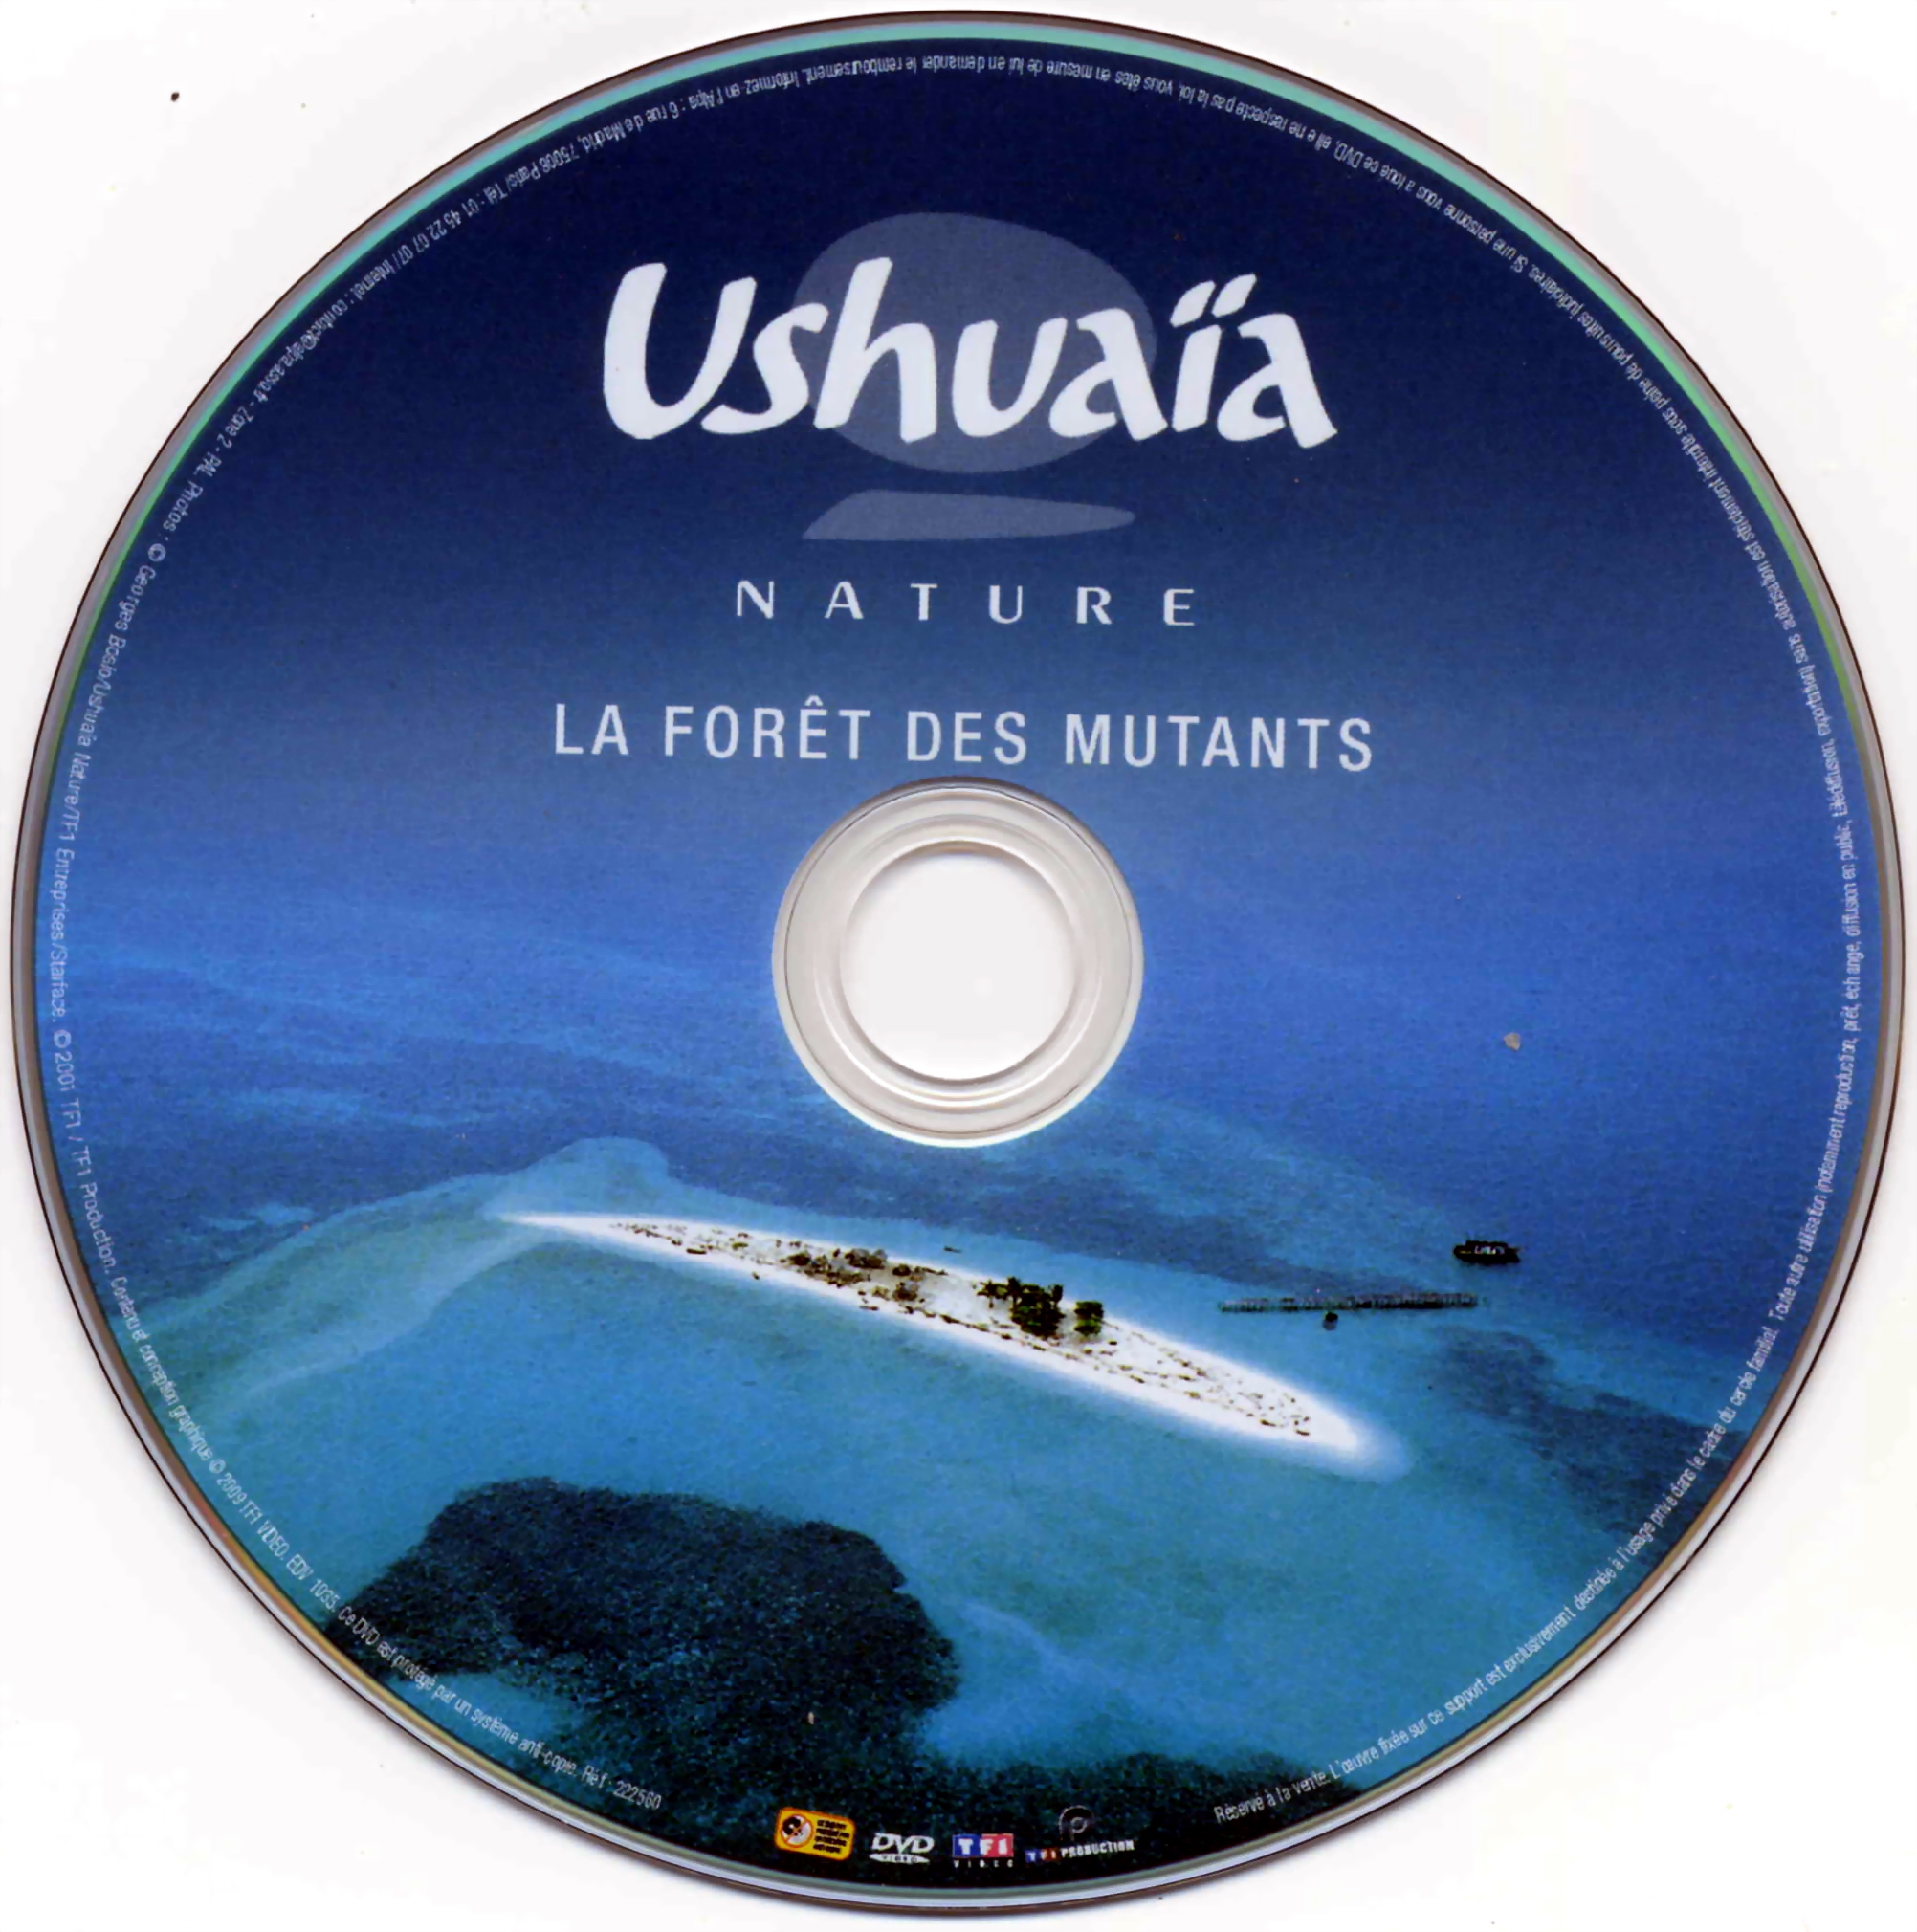 Ushuaia Nature - La fort des mutants